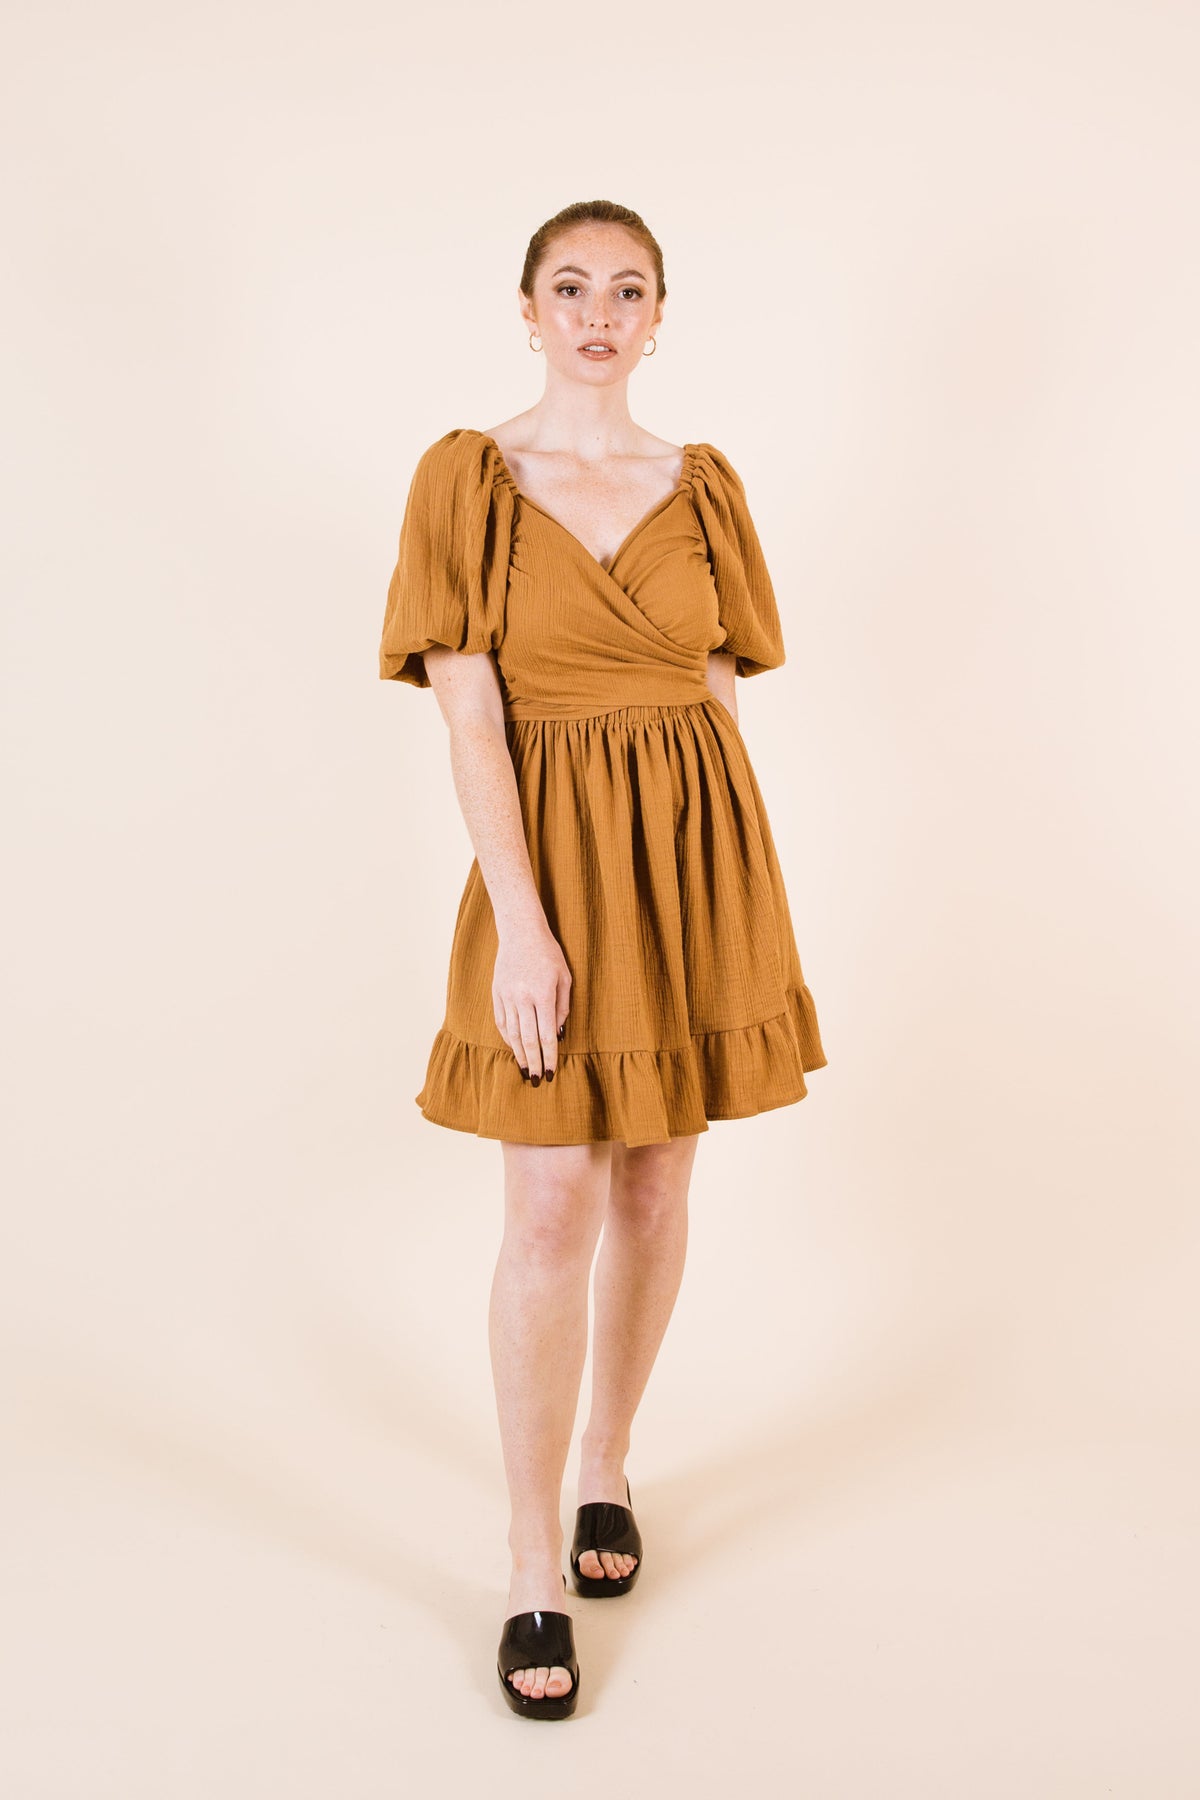 Estella Dress / Top / Skirt